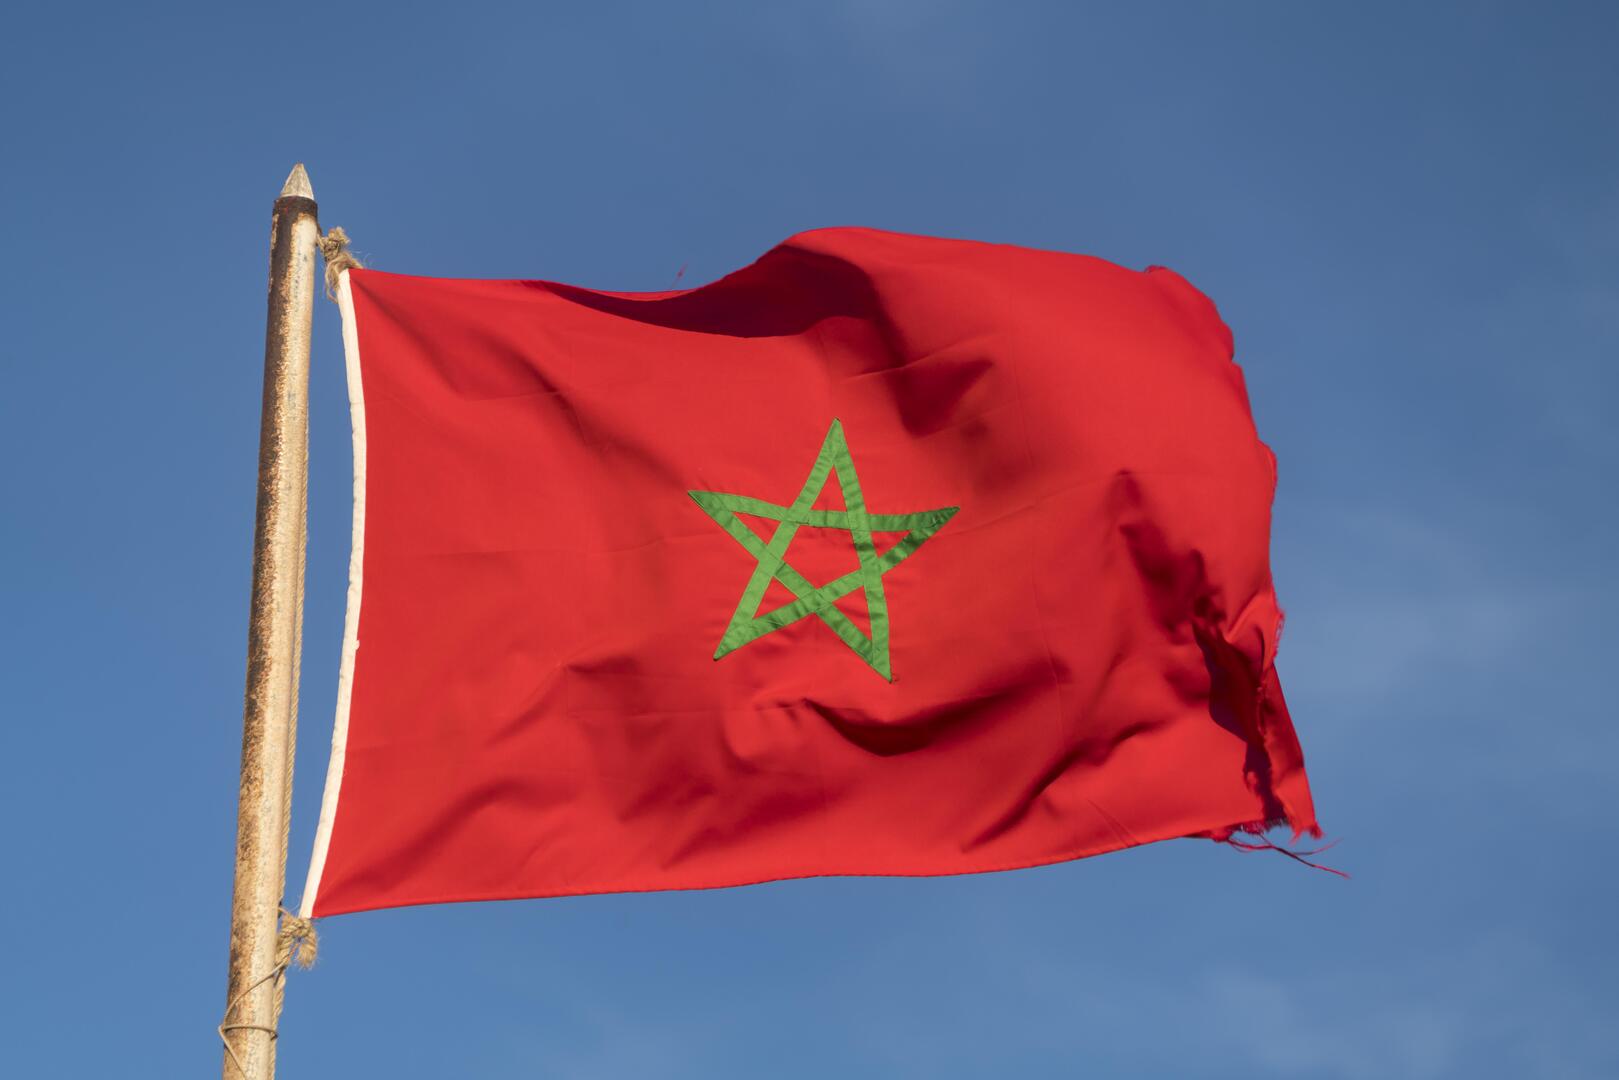 صحيفة تكشف تفاصيل وقوع ابنة رئيس الحكومة المغربية ضحية احتيال مصحة طبيب تجميل شهير